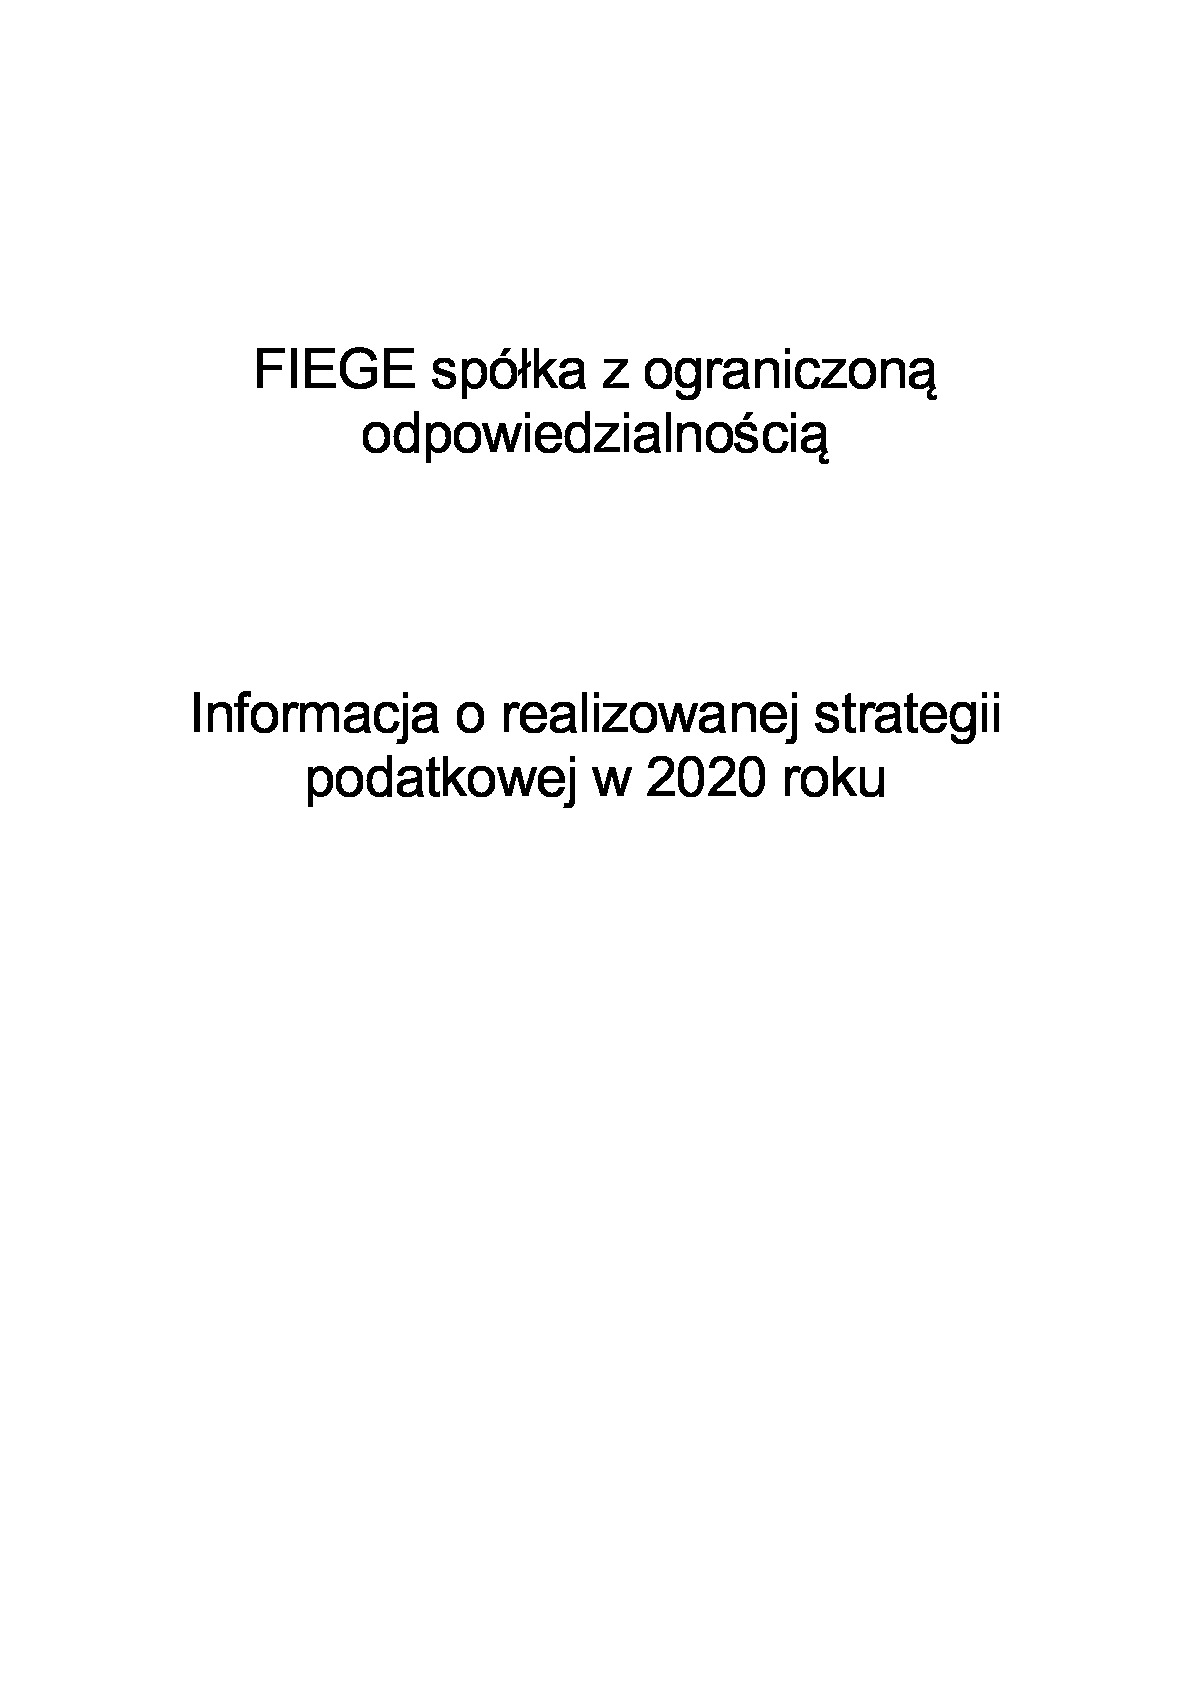 2020-informacja-o-strategii_fiege.pdf